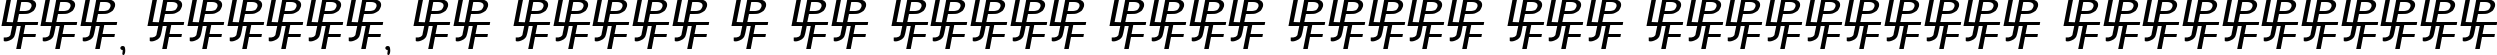 Пример написания шрифтом Peake Doubled текста на украинском